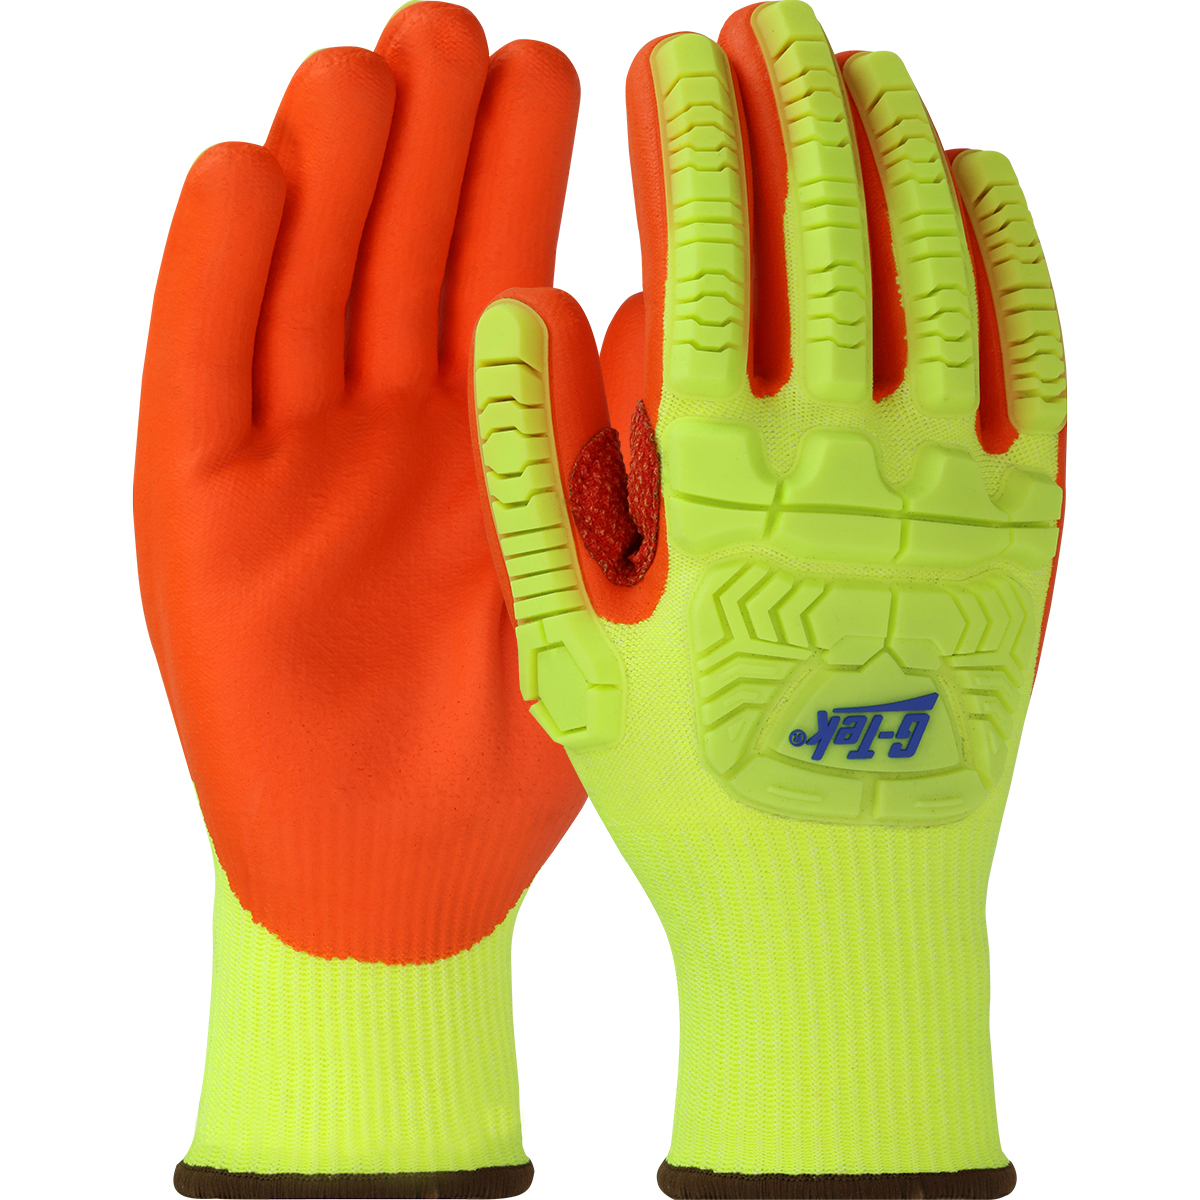 G-TEK HI-VIS IMPACT GLOVE NITRILE PALM - Dorsal Impact Gloves